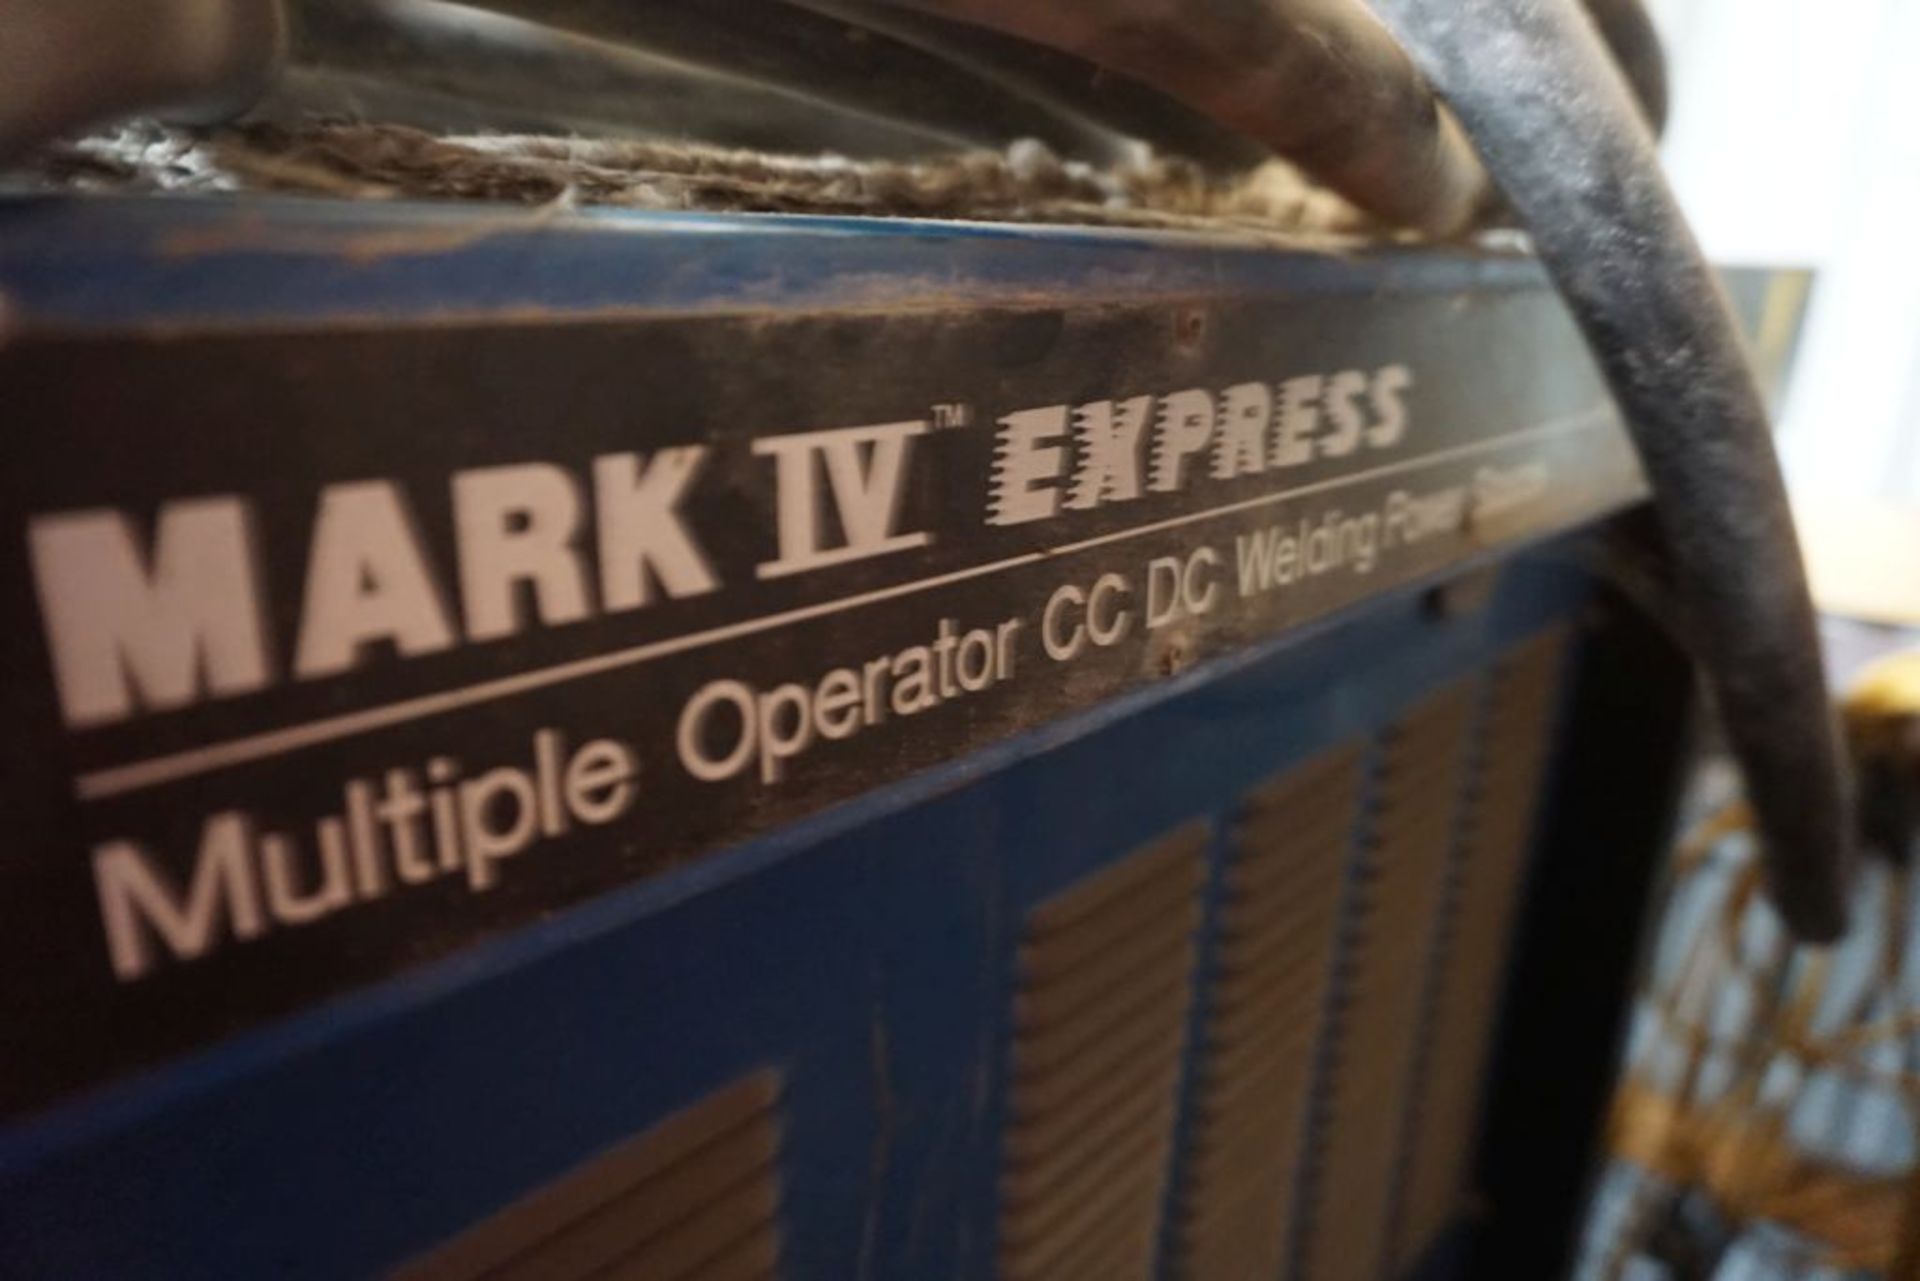 Miller Mark IV Express Multi Operator CC DC Welder|Includes (4) 40V, 200A Outlets - Image 9 of 27